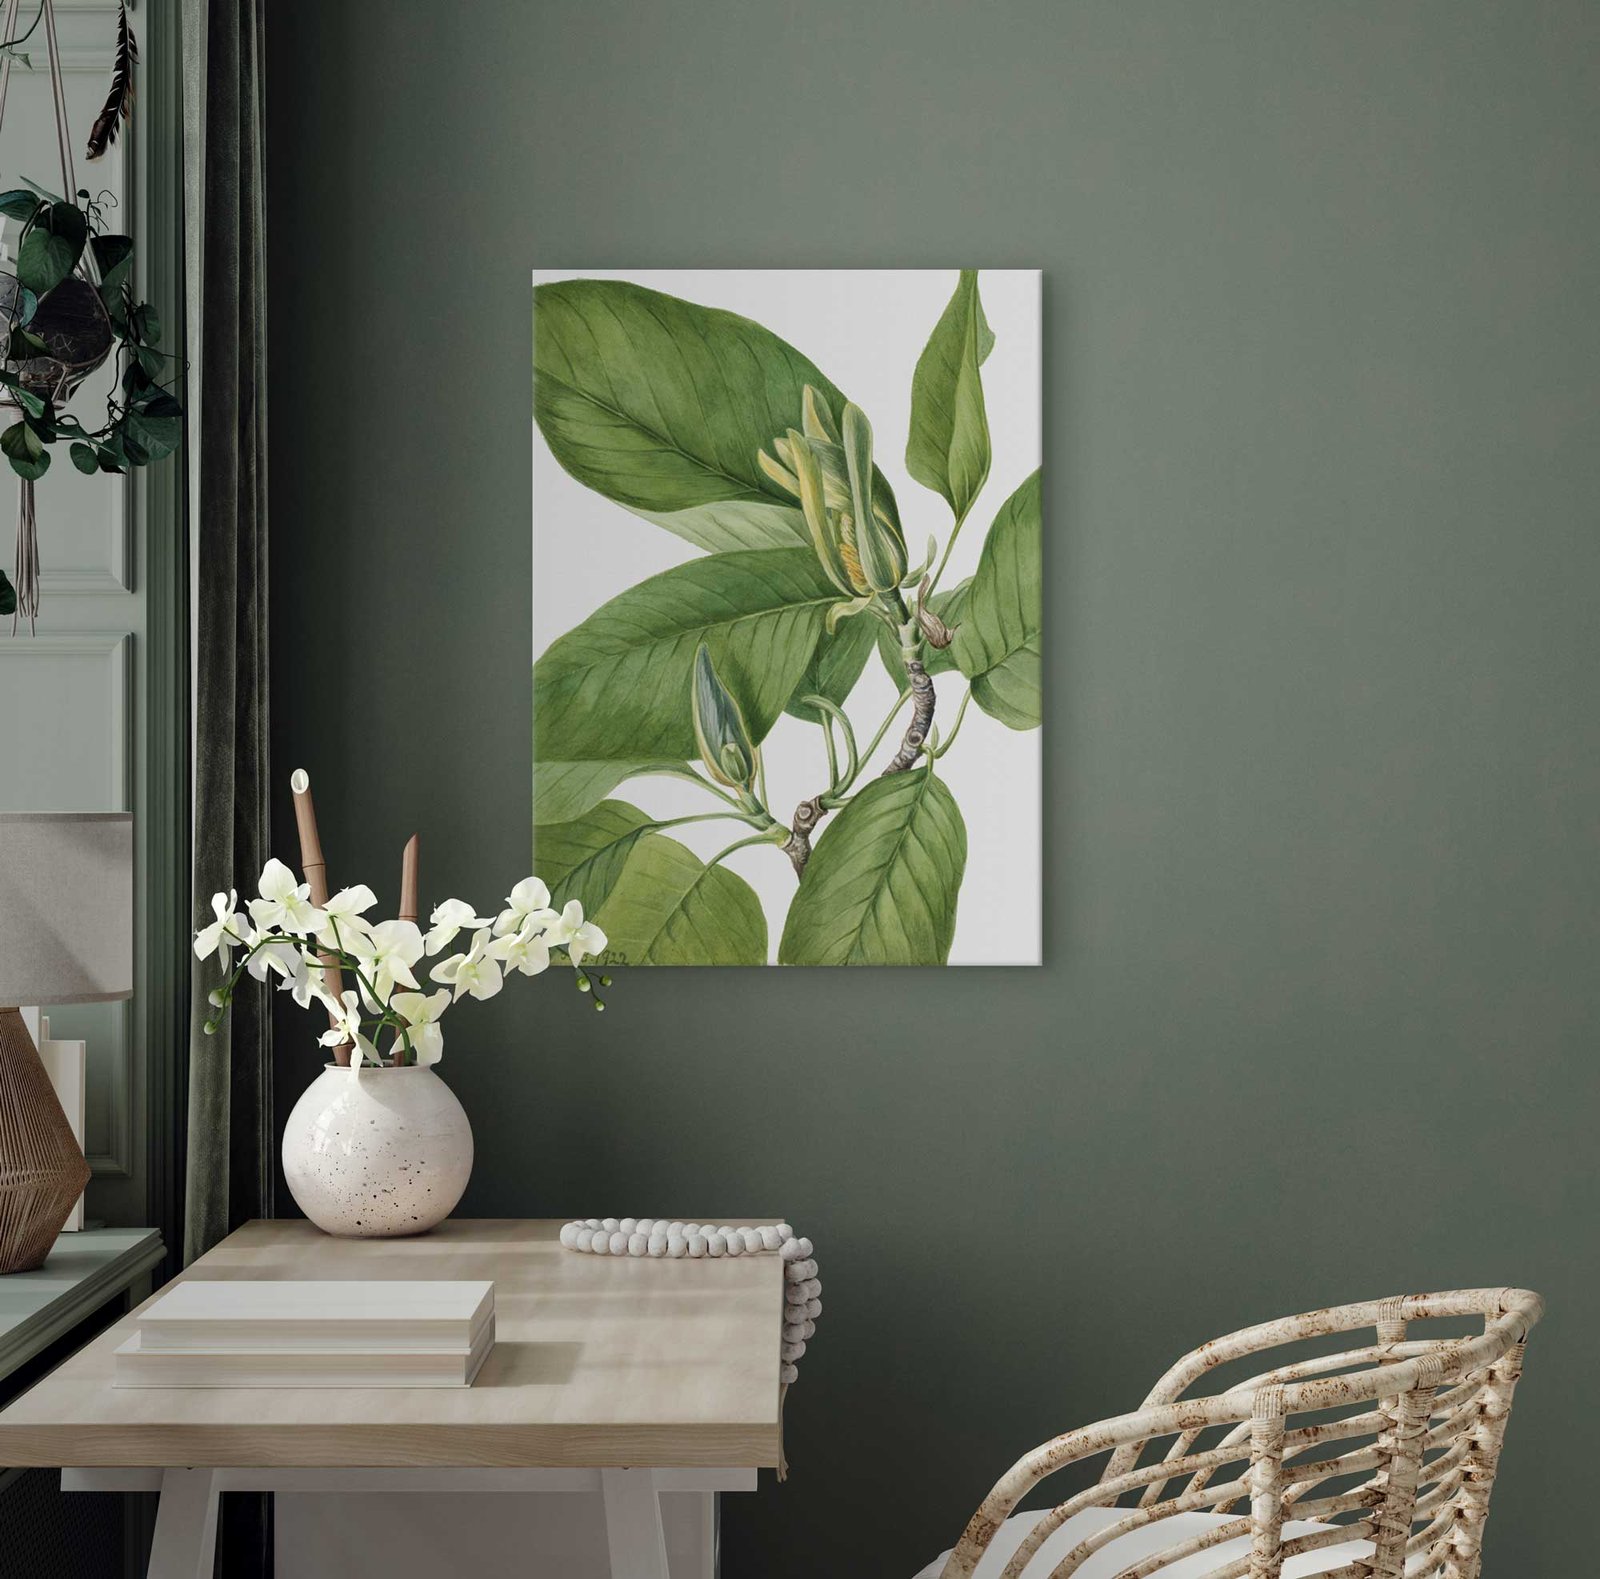 181 piesti paveikslai darbo kambaryje - Agurkinė magnolija - Mary Vaux Walcott